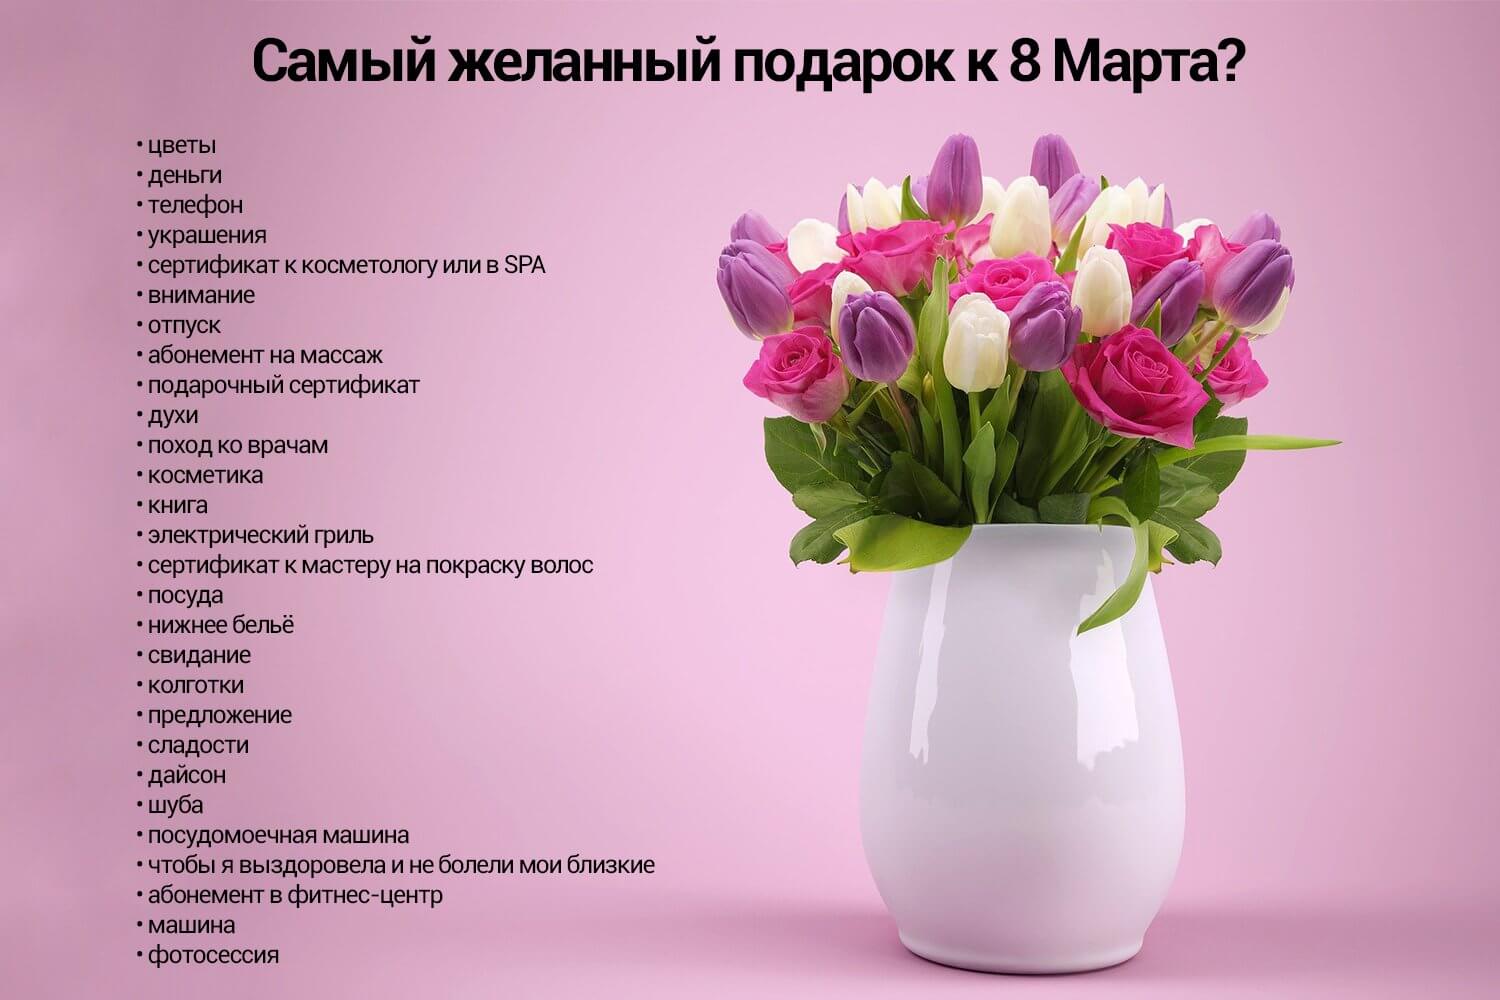 Цветы, деньги и внимание: чего на самом деле хотят женщины к 8 Марта